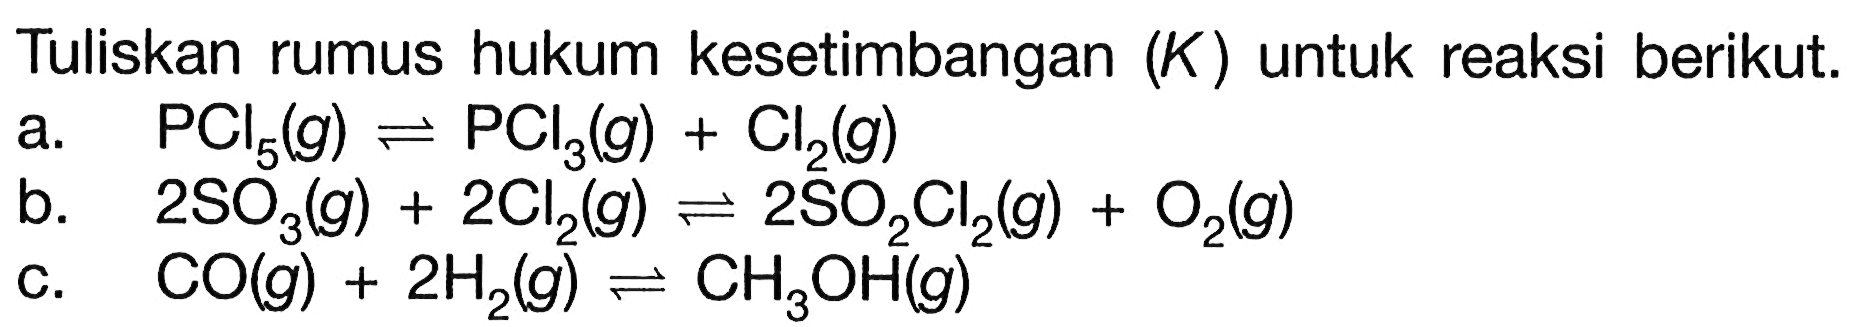 Tuliskan rumus hukum kesetimbangan (K) untuk reaksi berikut.a. PCl5(g) <=> PCl3(g)+Cl2(g) b. 2SO3(g)+2Cl2(g) <=> 2SO2 Cl2(g)+O2(g) c. CO(g)+2H2(g) <=> CH3OH(g)